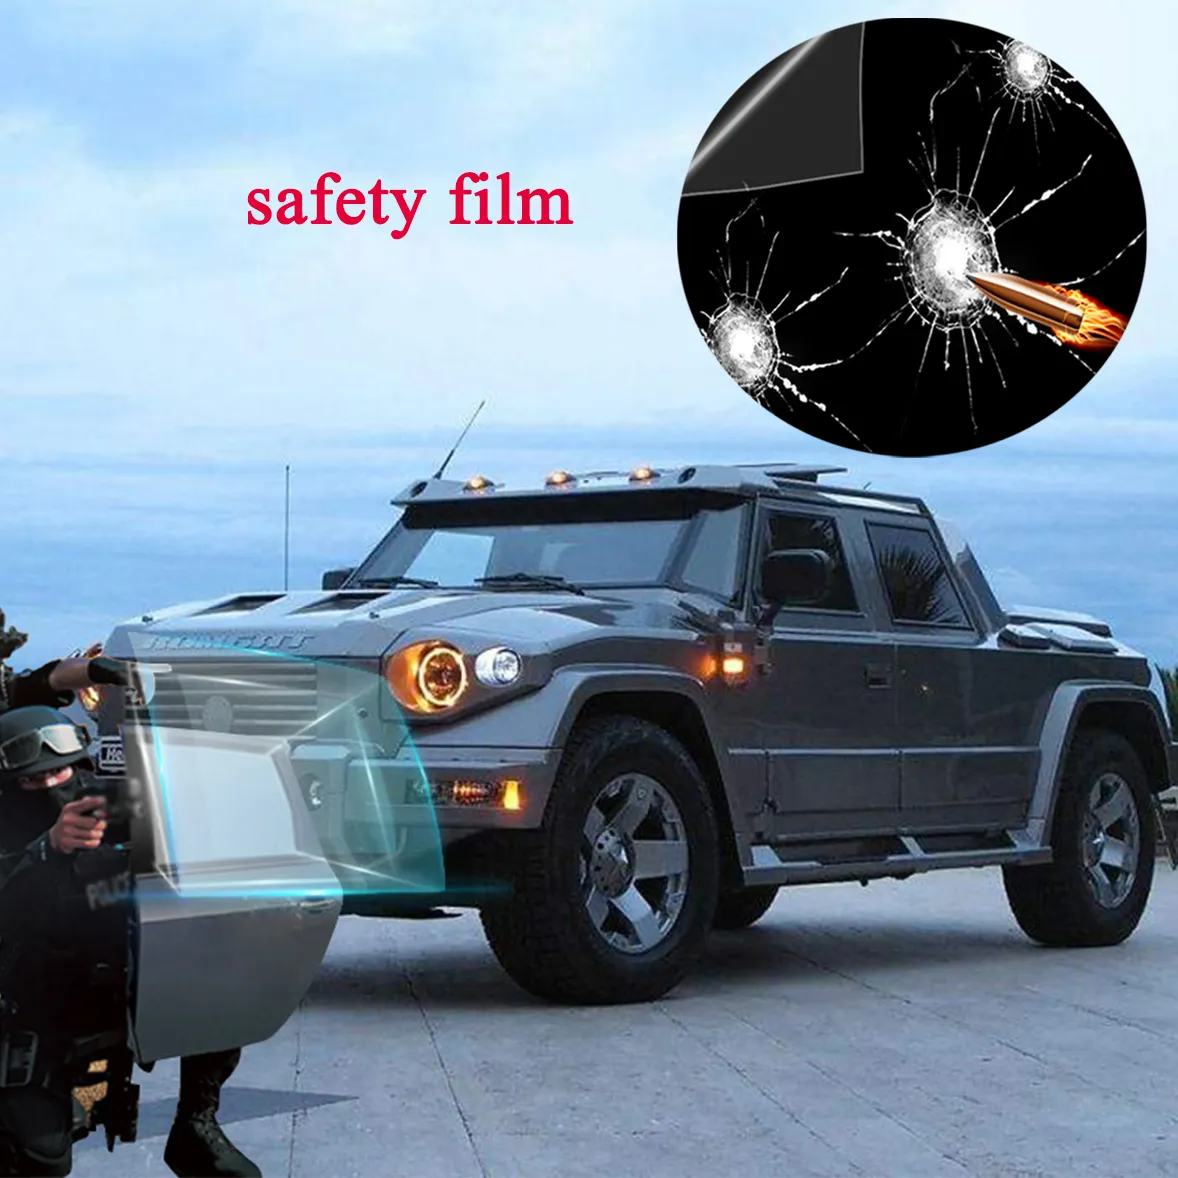 Filme de cerâmica uv para janela de carro, tinto de uv nano uv400 à prova de balas filme de janela de segurança automotiva para carro